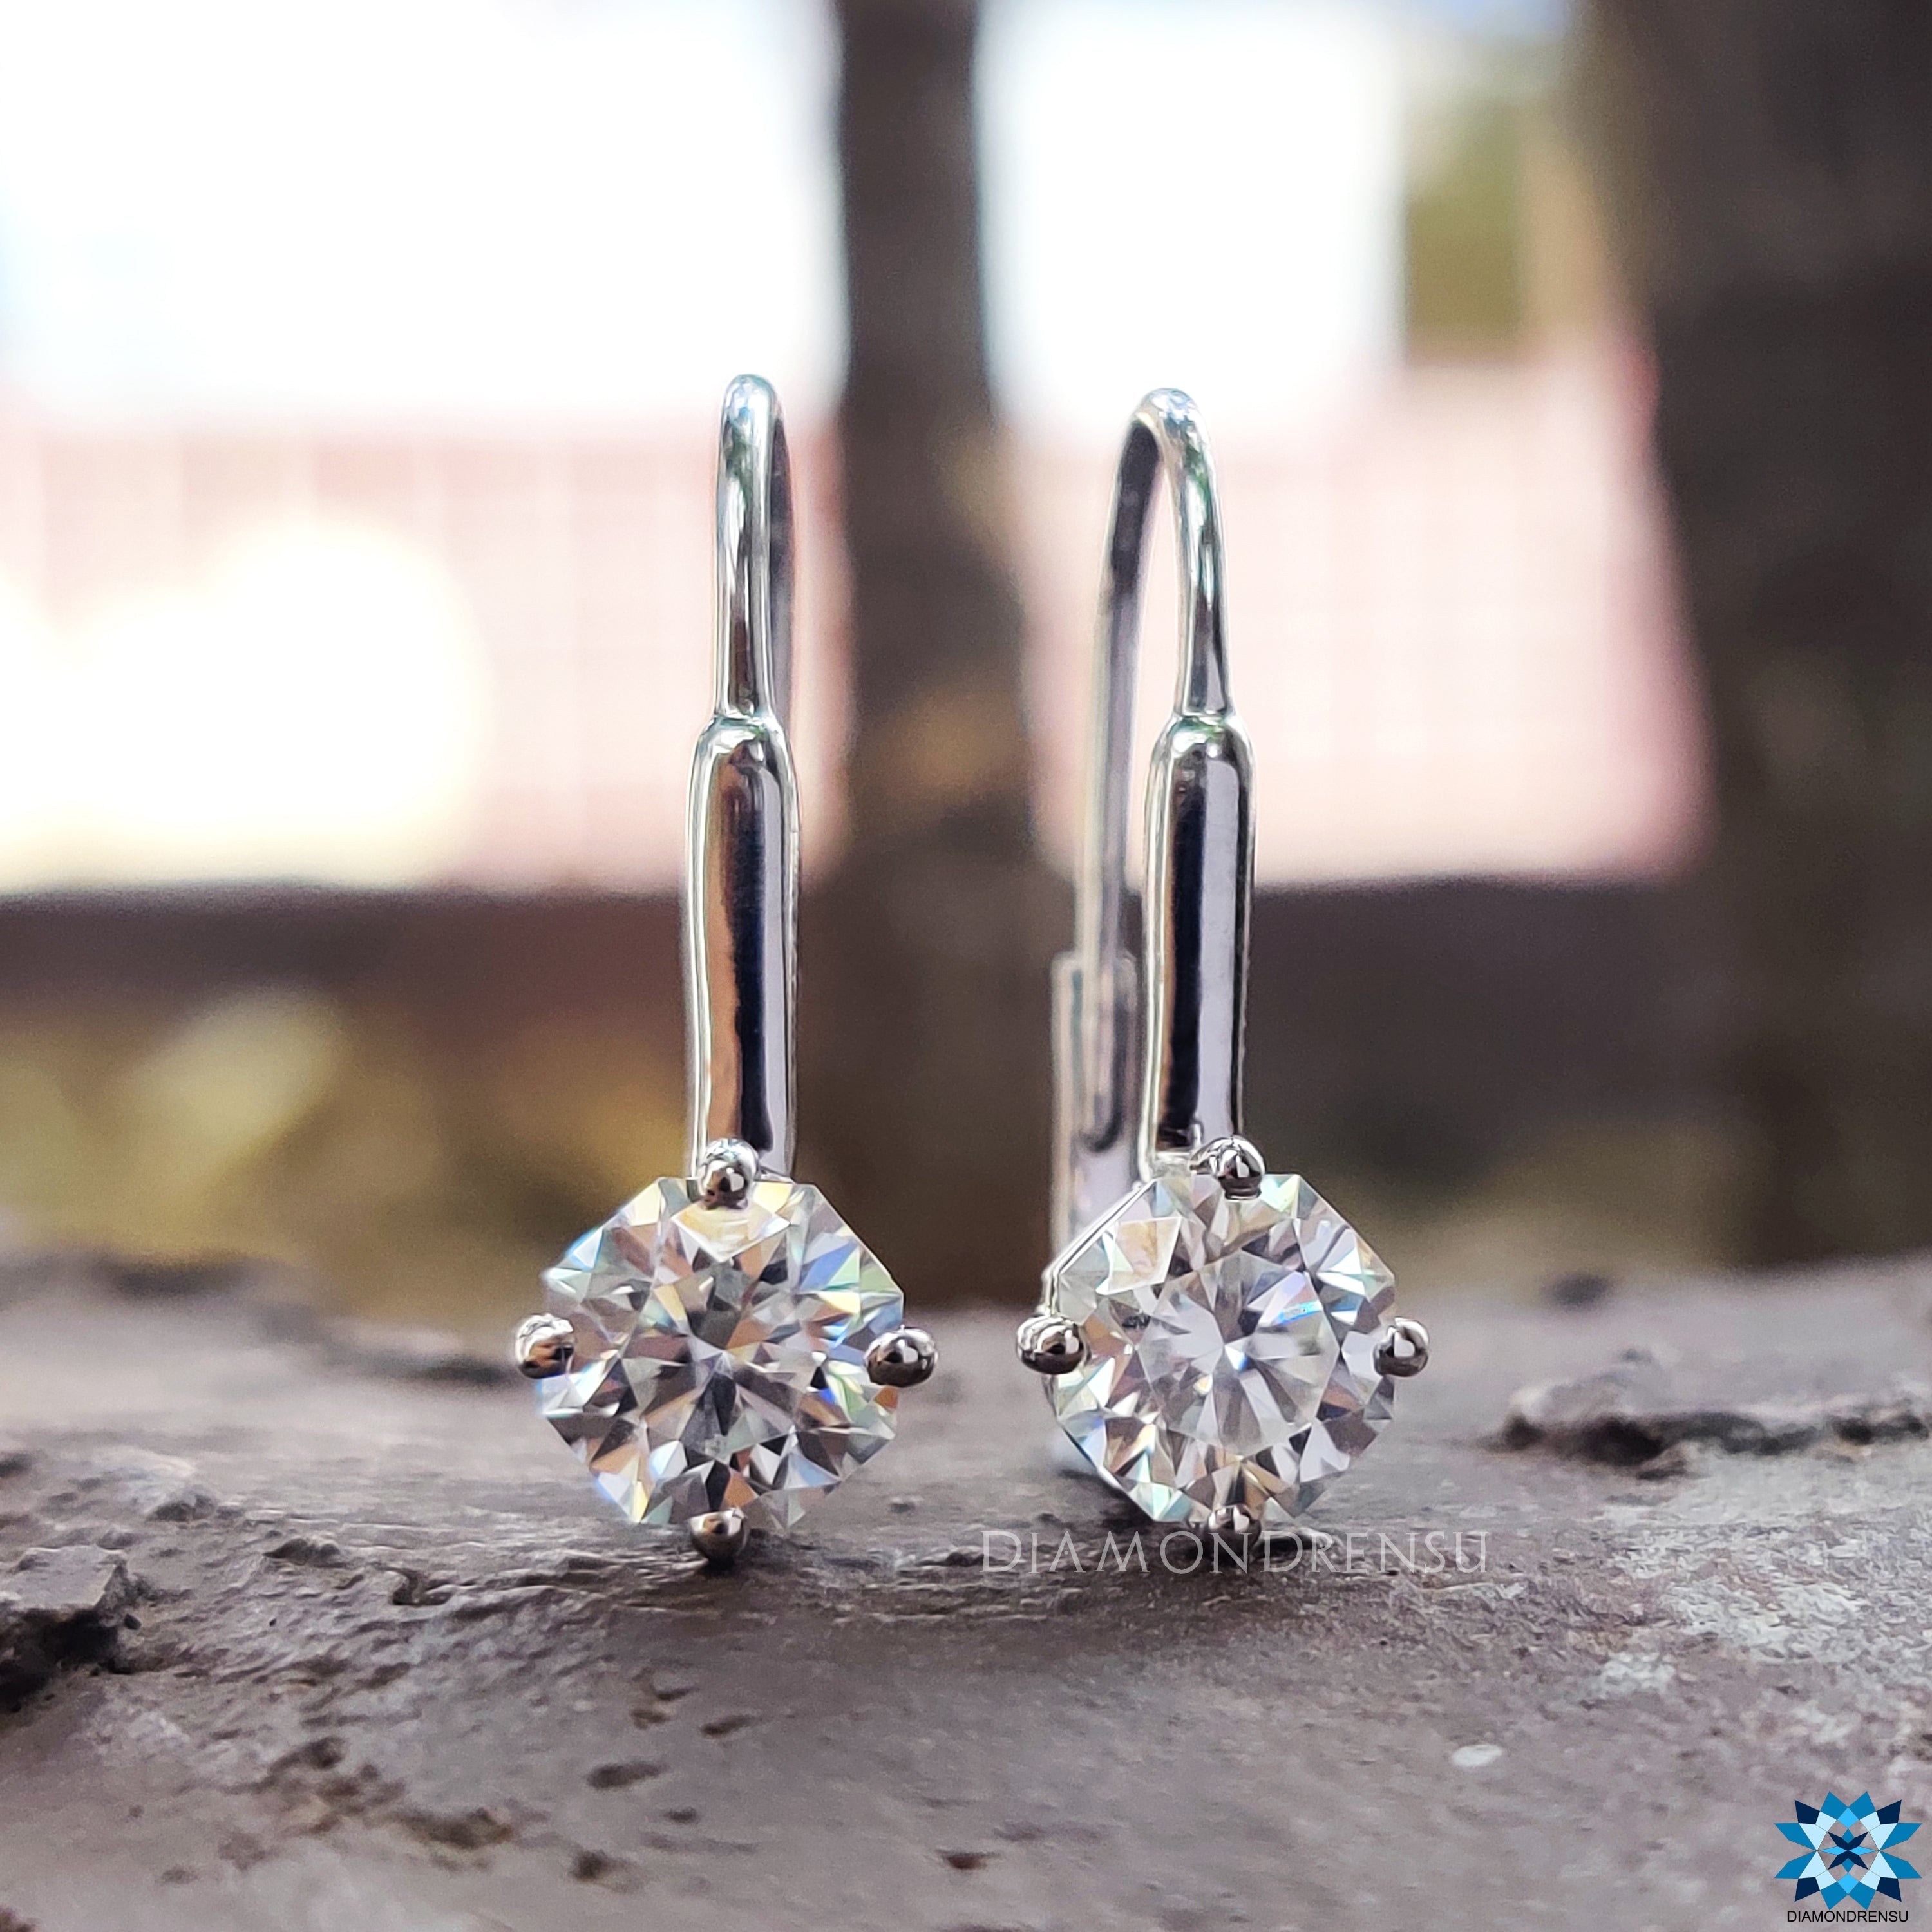 drop earrings - diamondrensu